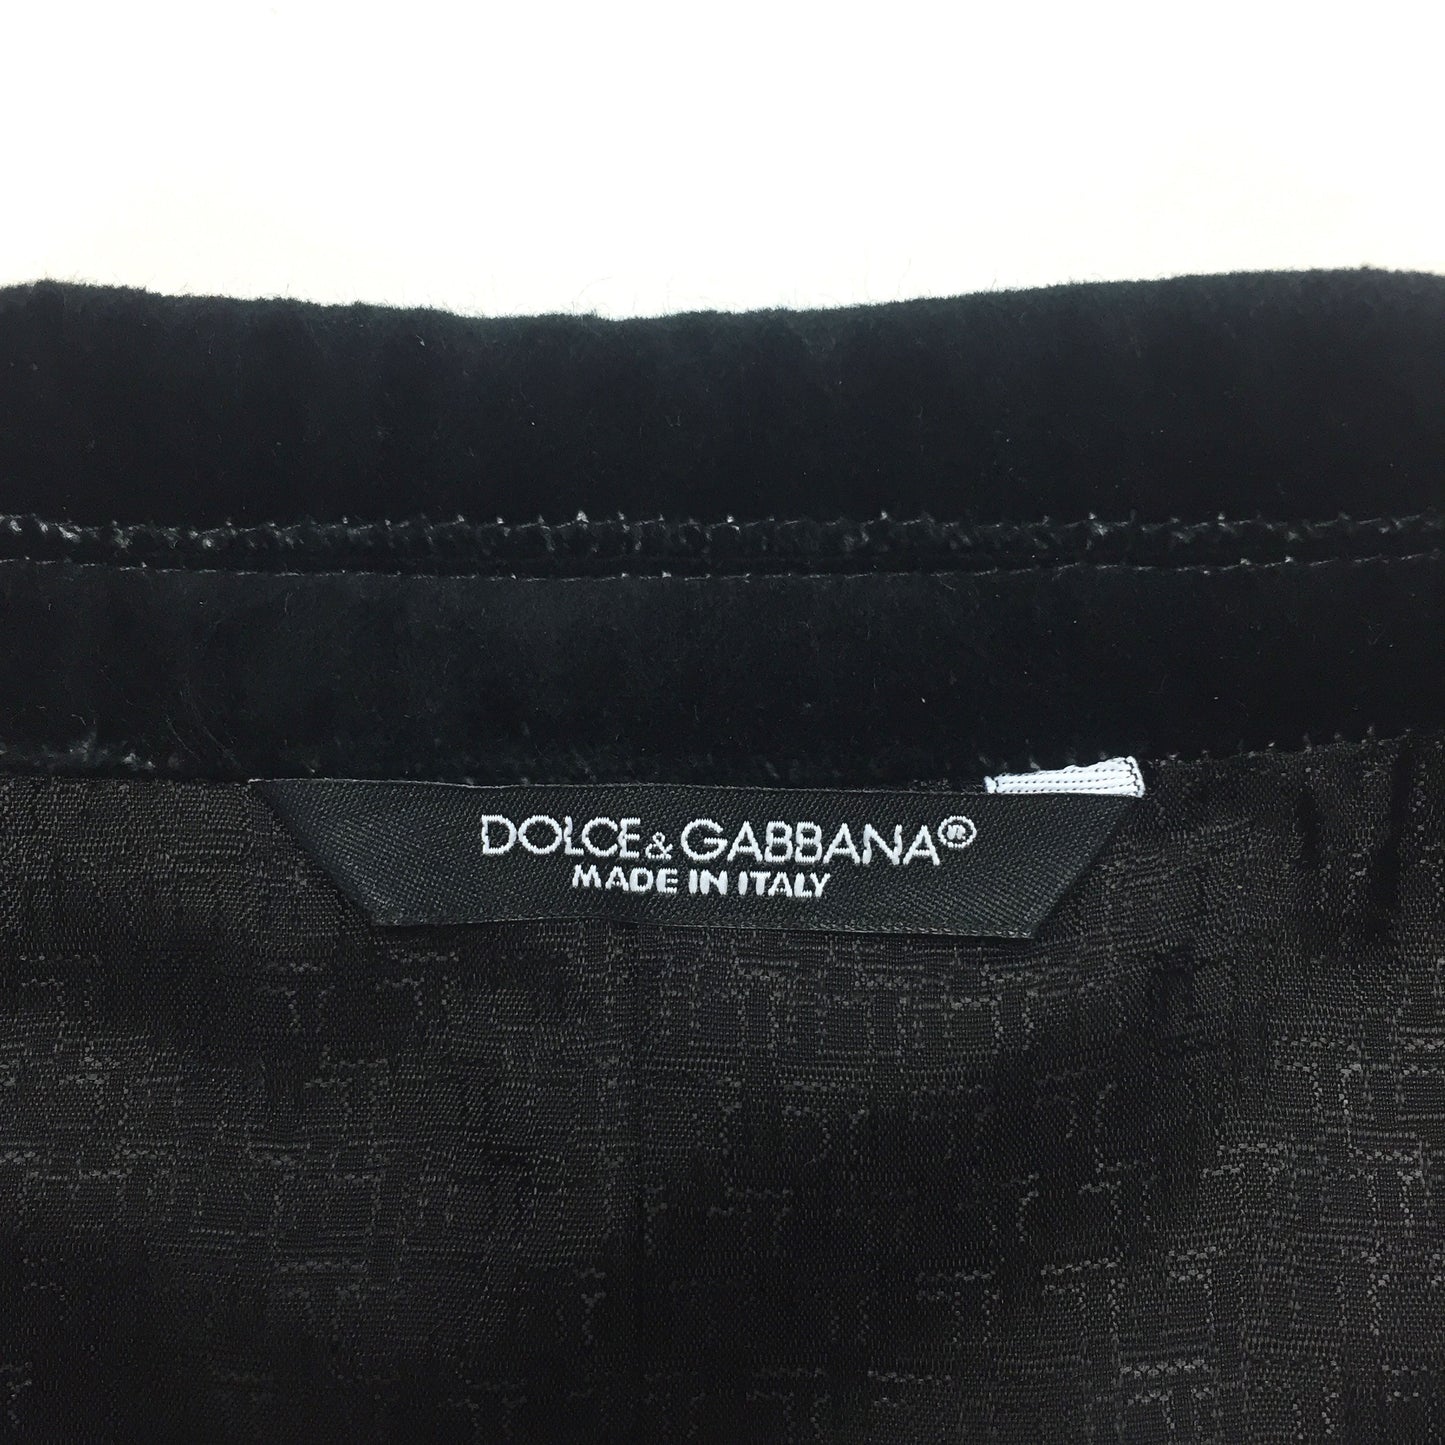 Dolce & Gabbana - Coat of Arms Velvet Blazer